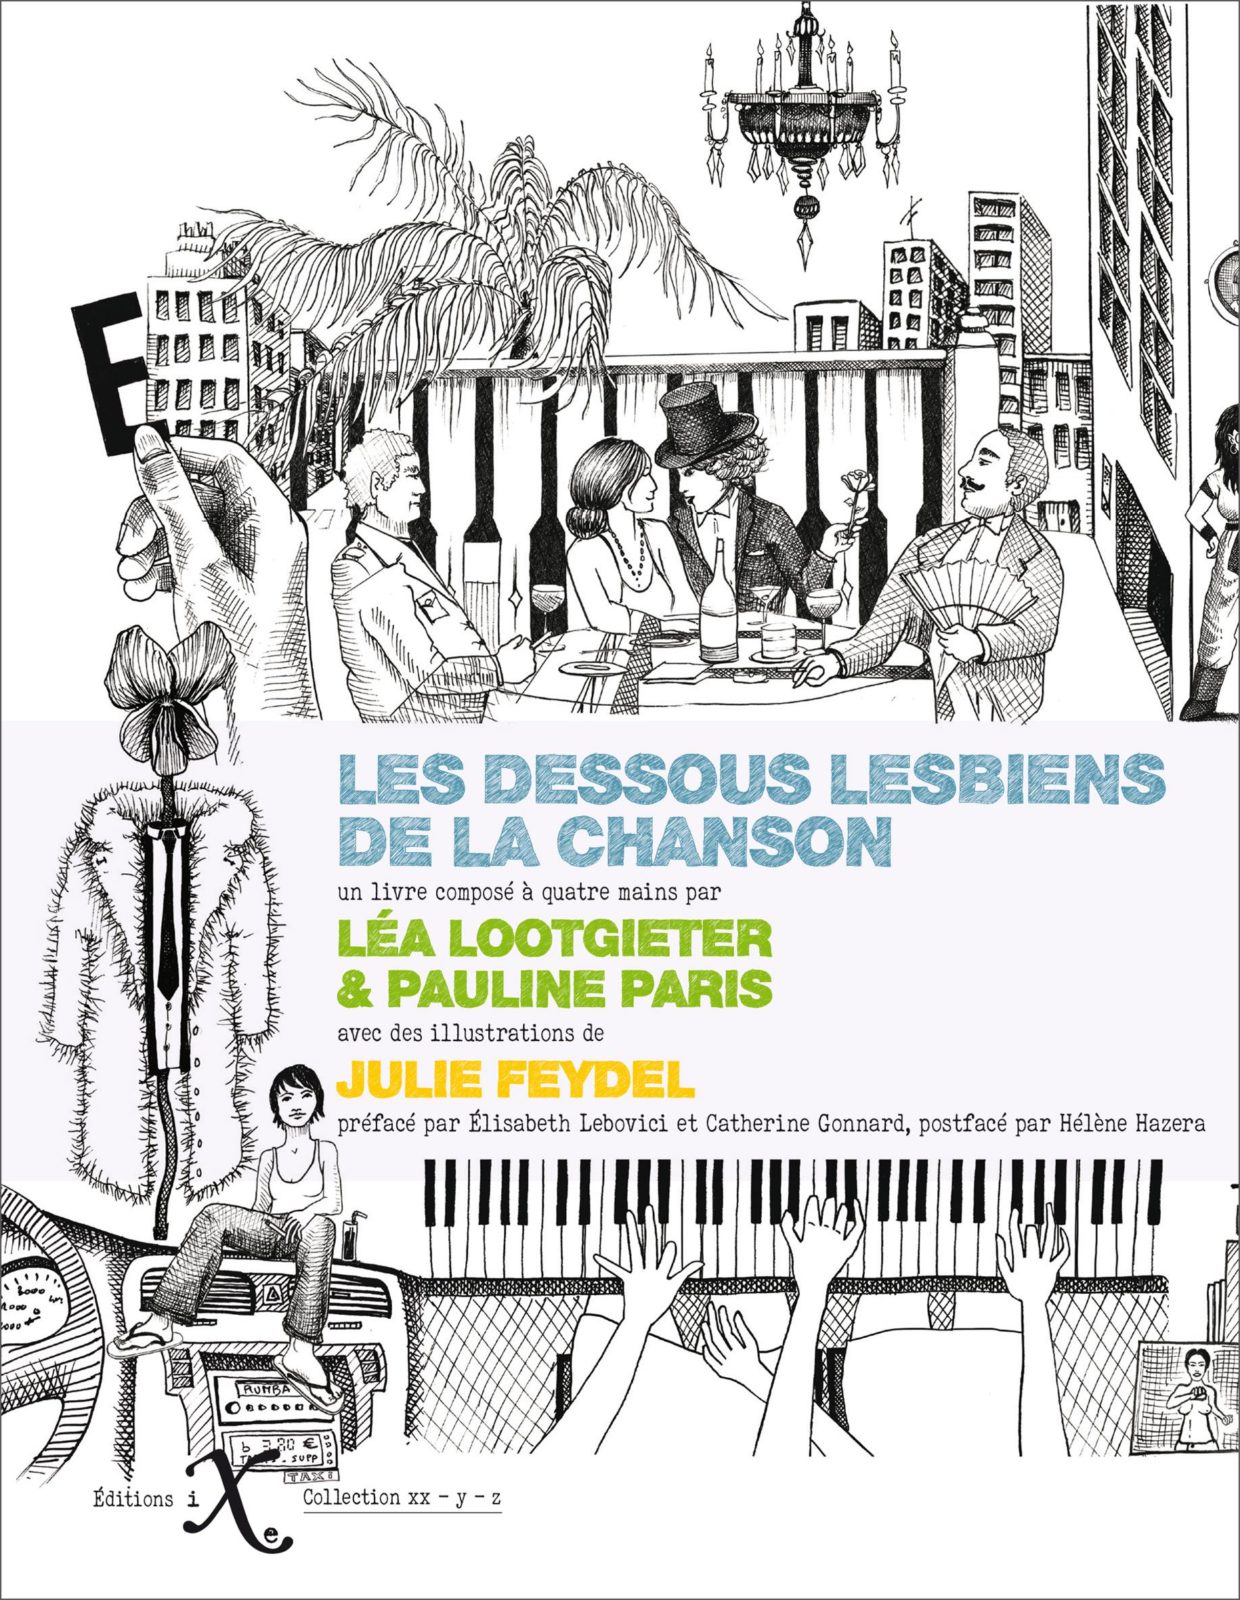 Léa Lootgieter, Pauline Paris, Julie Feydel: Les dessous lesbiens de la chanson (Hardcover, fr language, Editions IXe)